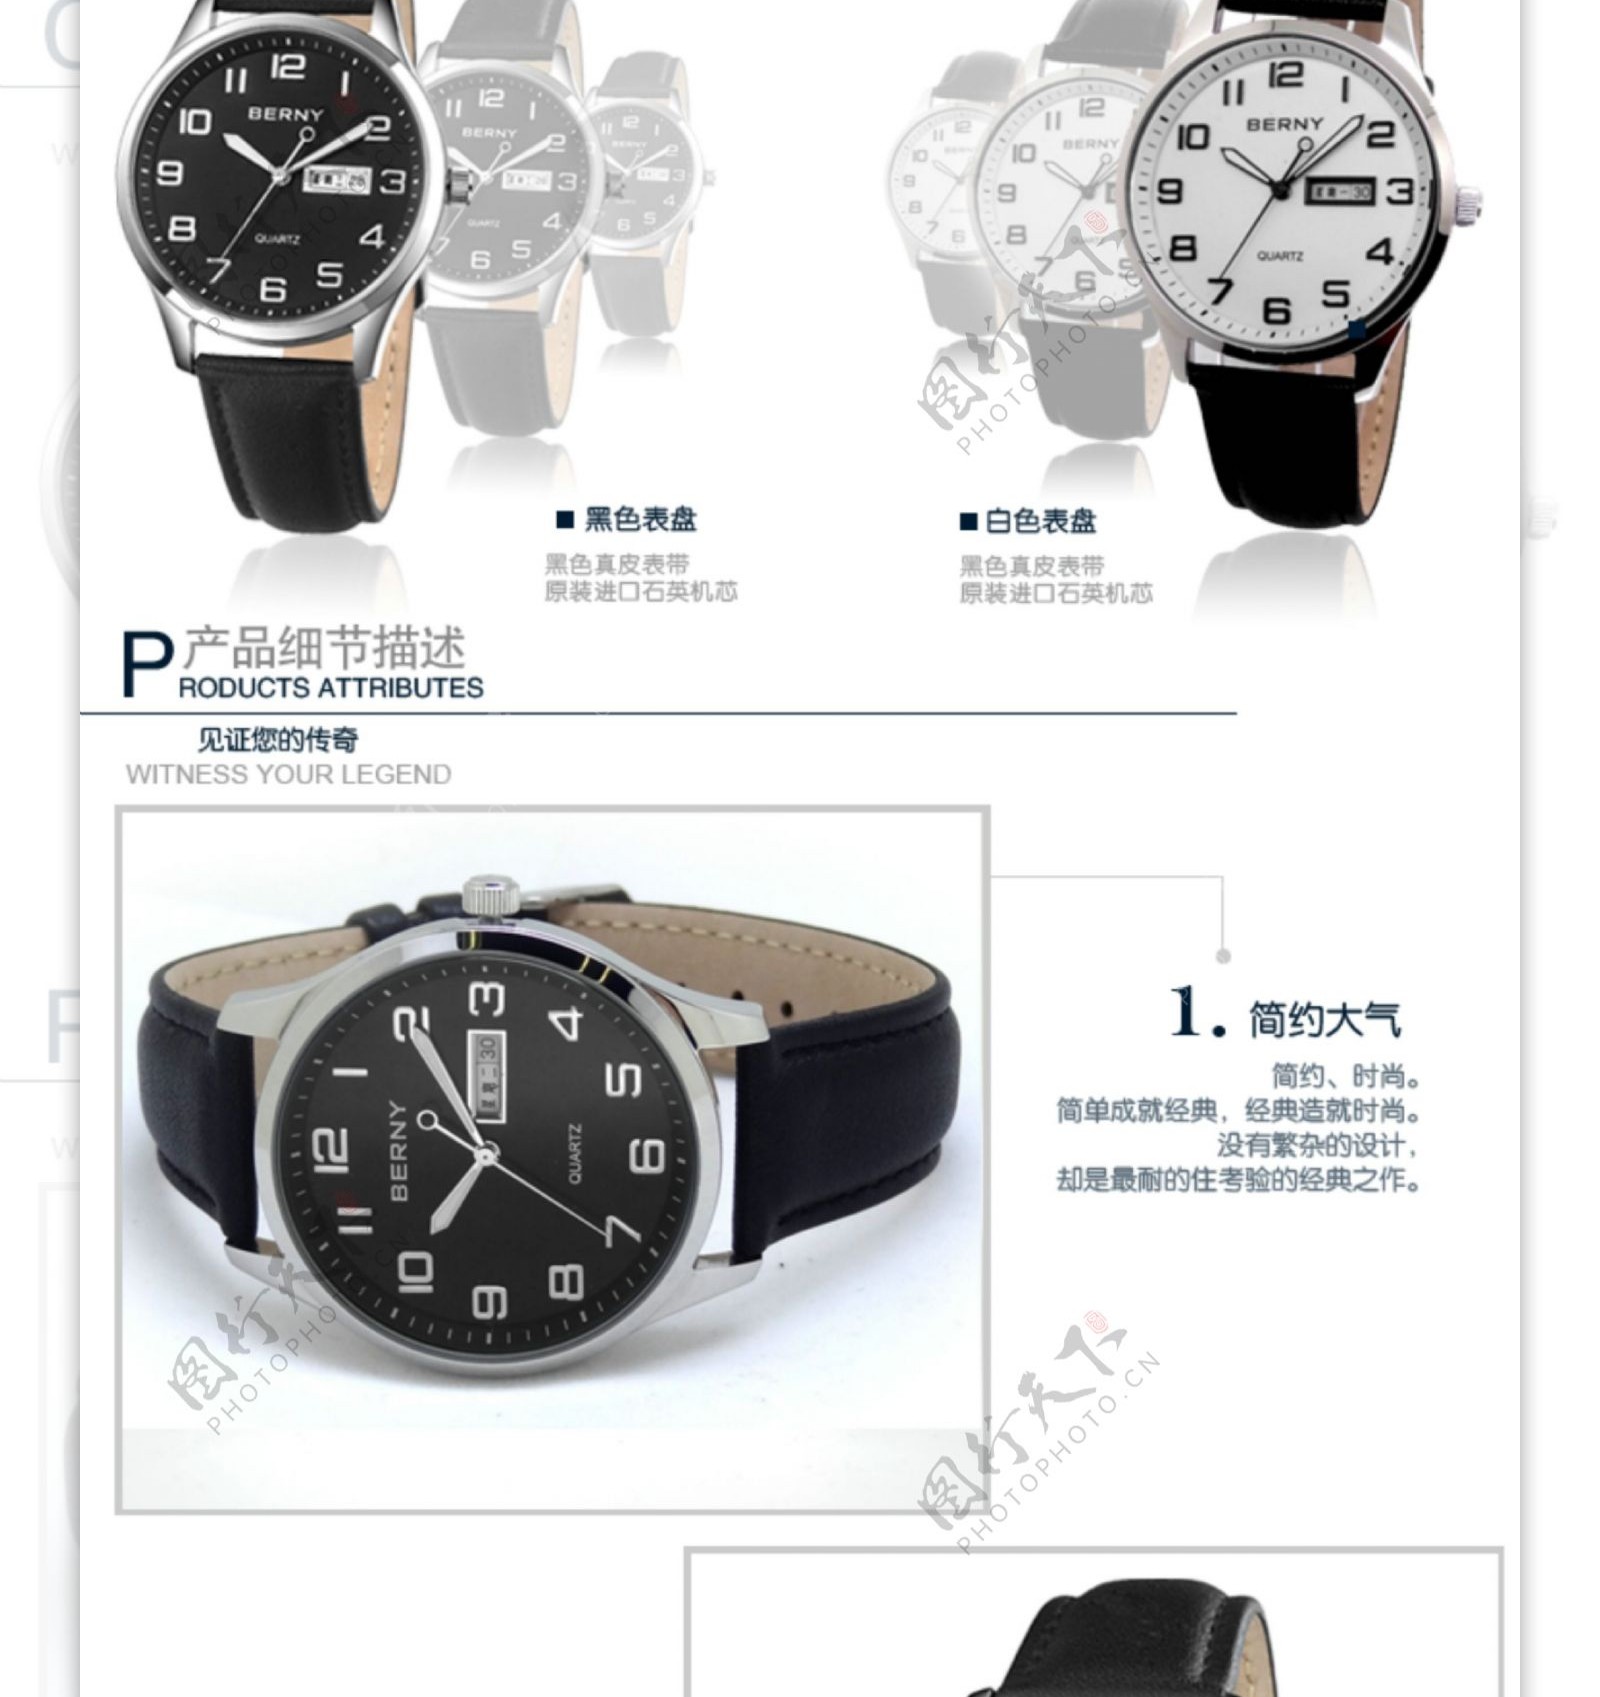 淘宝品牌手表详情页模板设计